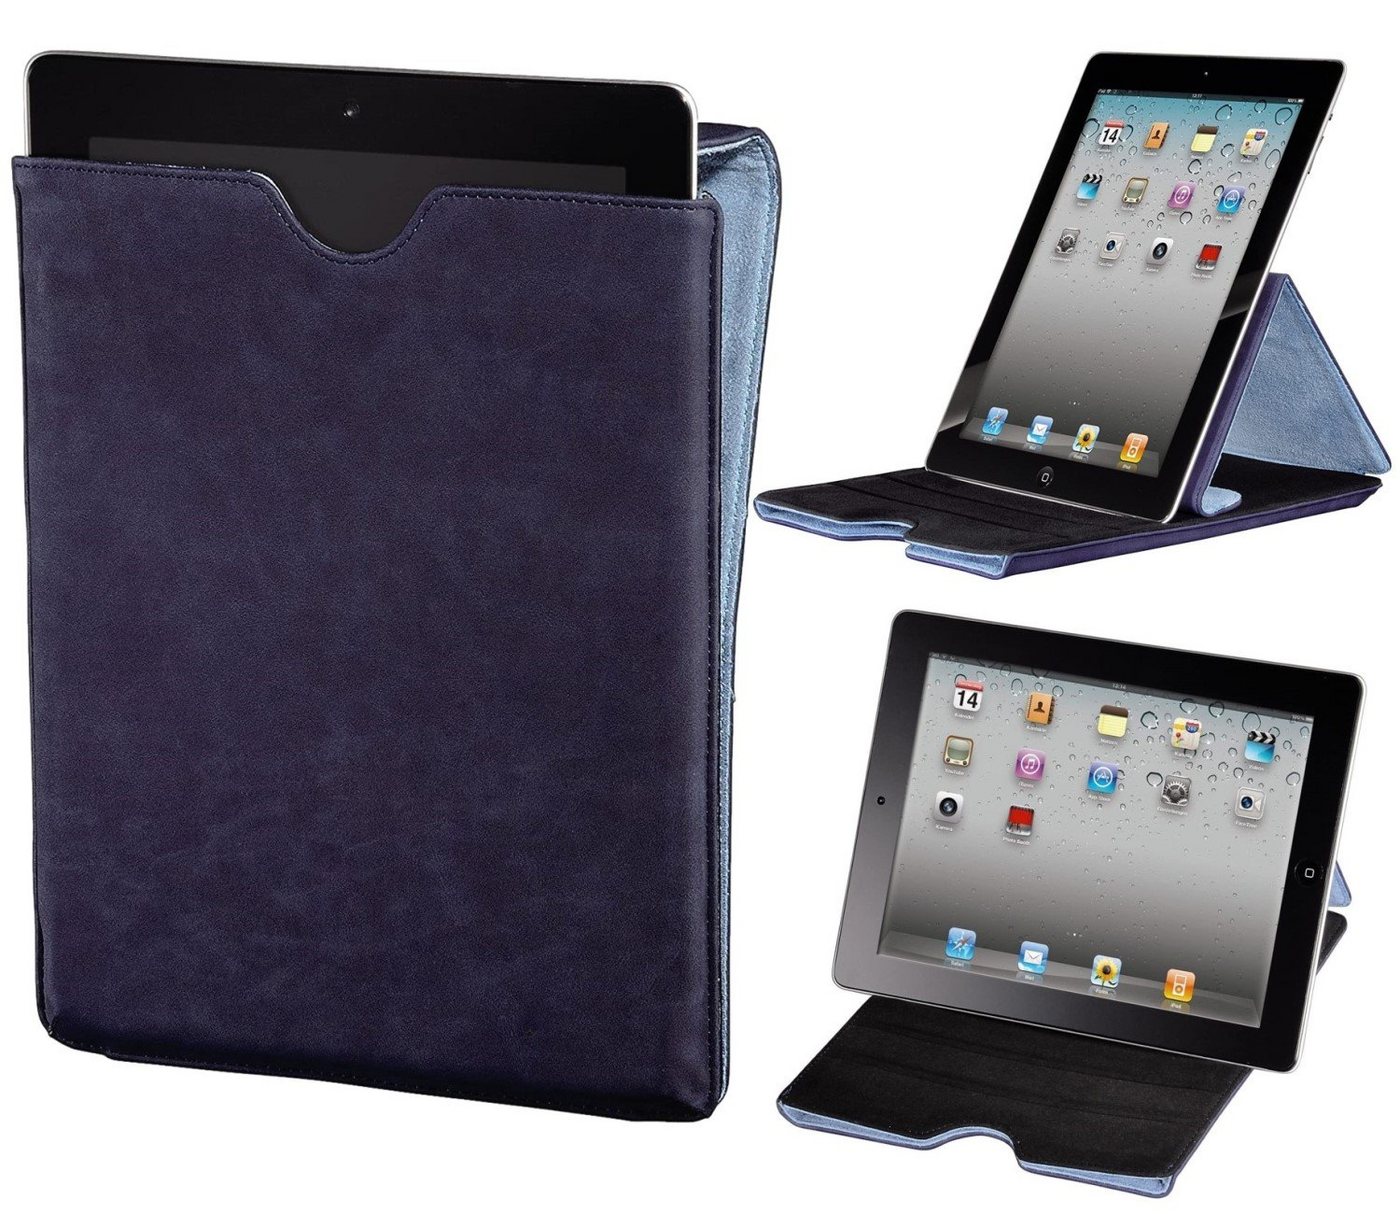 Hama Tablet-Hülle Tasche Ständer Cover Schutz-Hülle Case Blau, Klapp-Tasche für iPad Tablet PC 9,4" 9,7" 10" 10,1" 10,2" 10,4" 10,5" von Hama